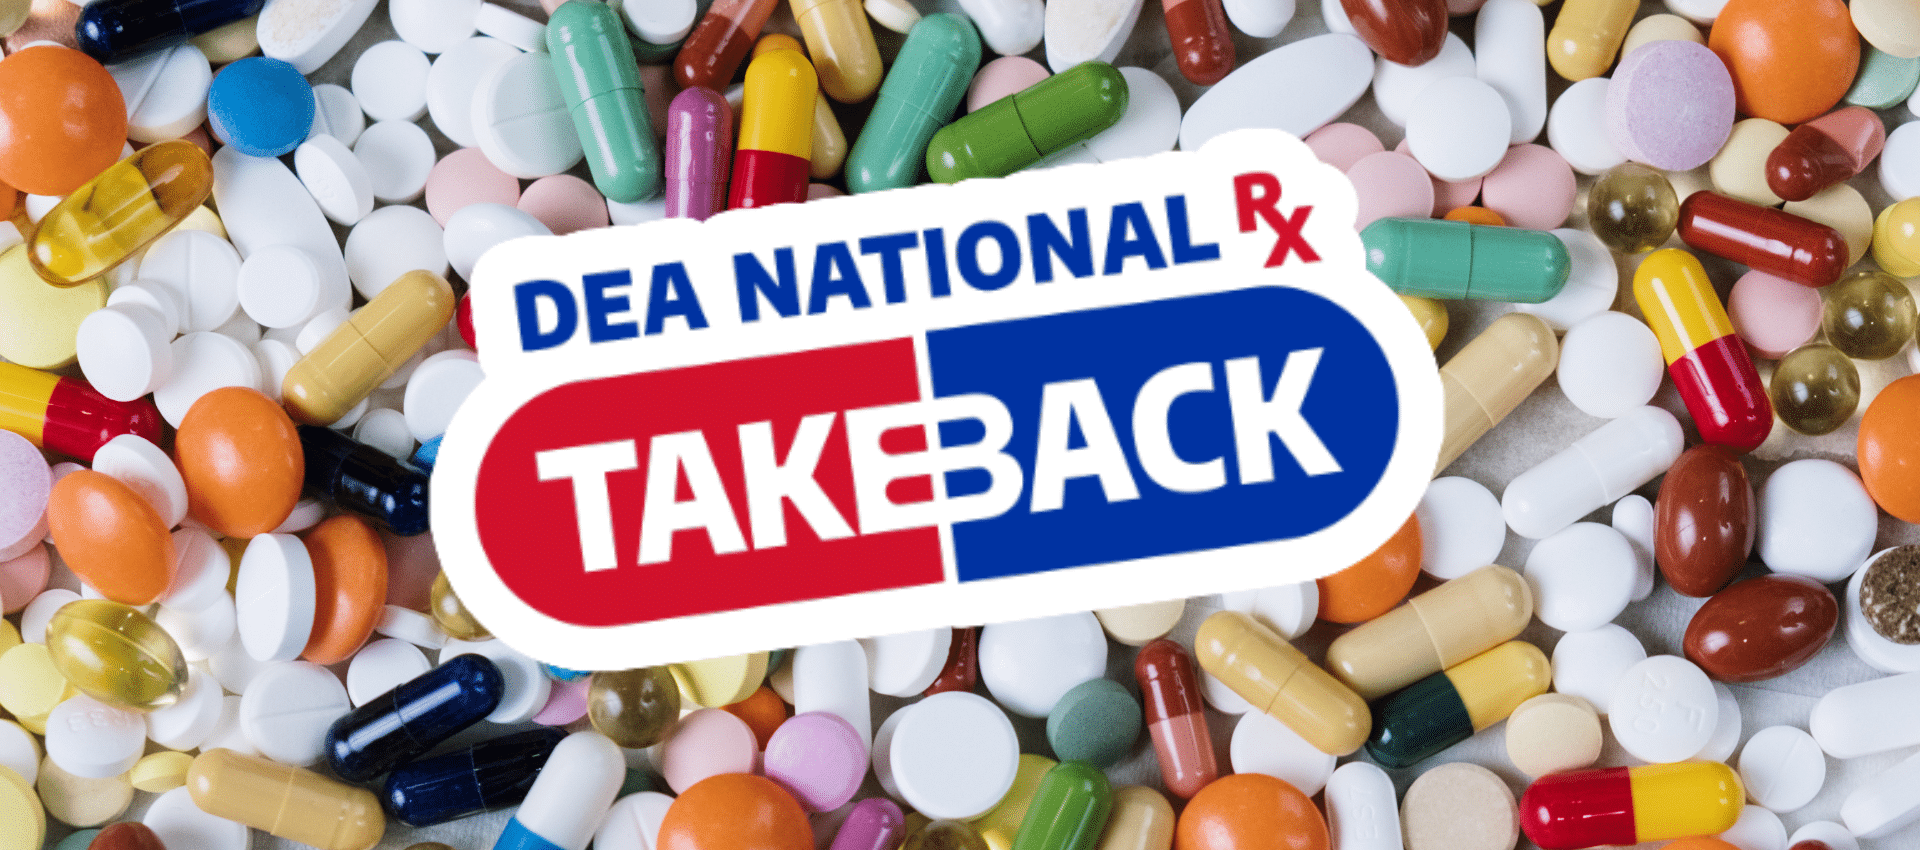 Drug Take Back Day: April 27th